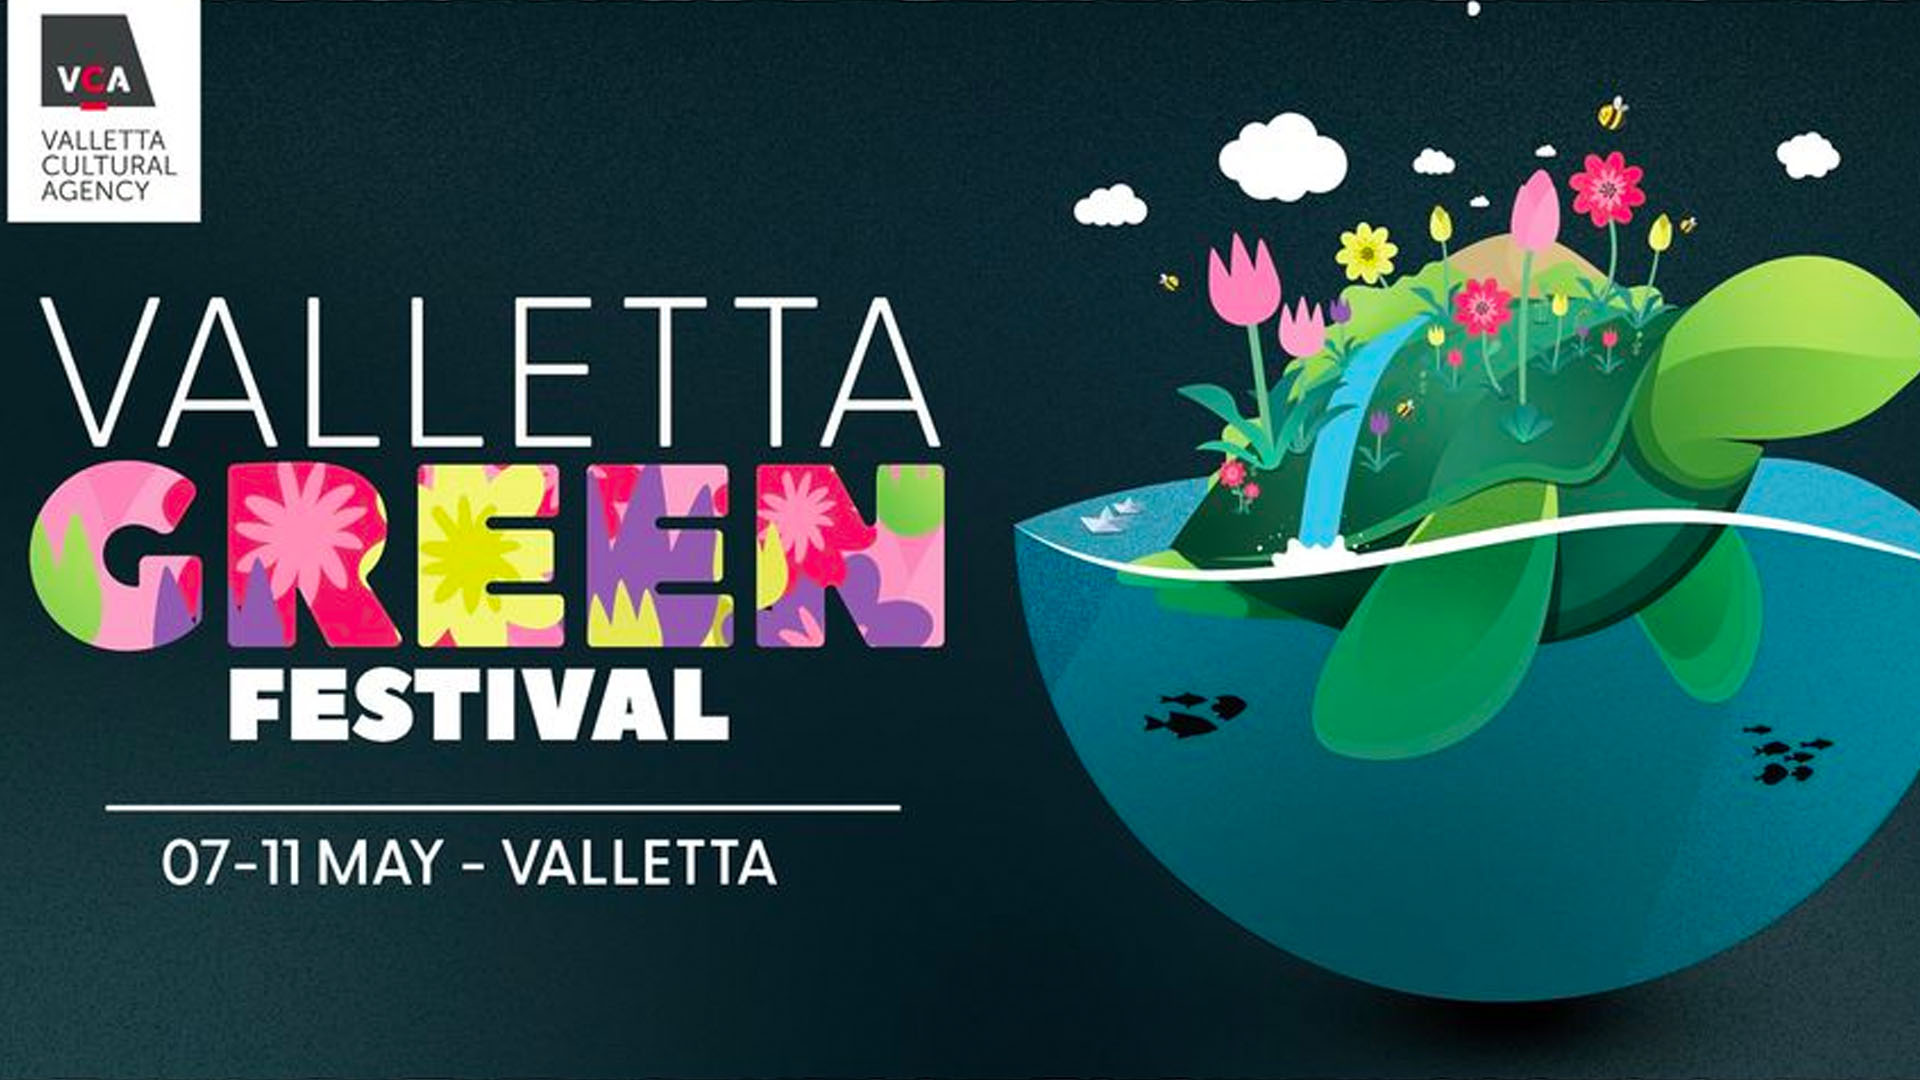 Valletta Cultural Agency announce Valletta Green Festival 2021